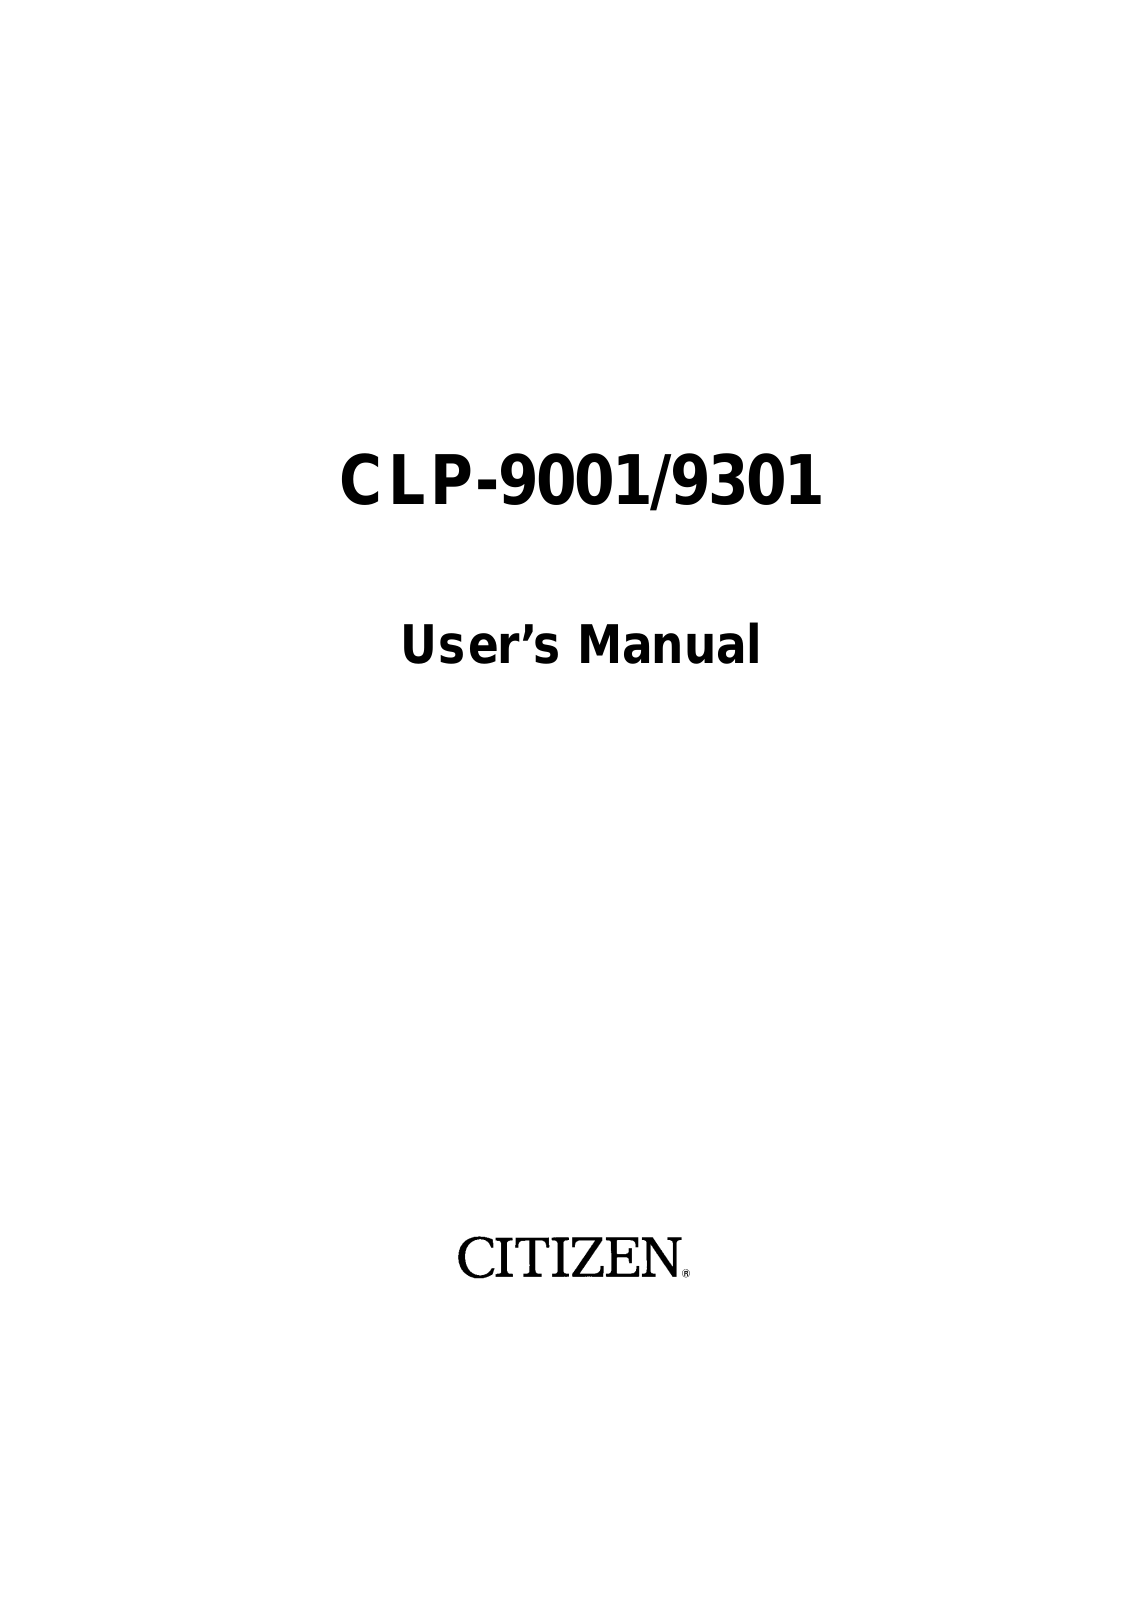 Citizen CLP-9001, CLP-9301 User Manual